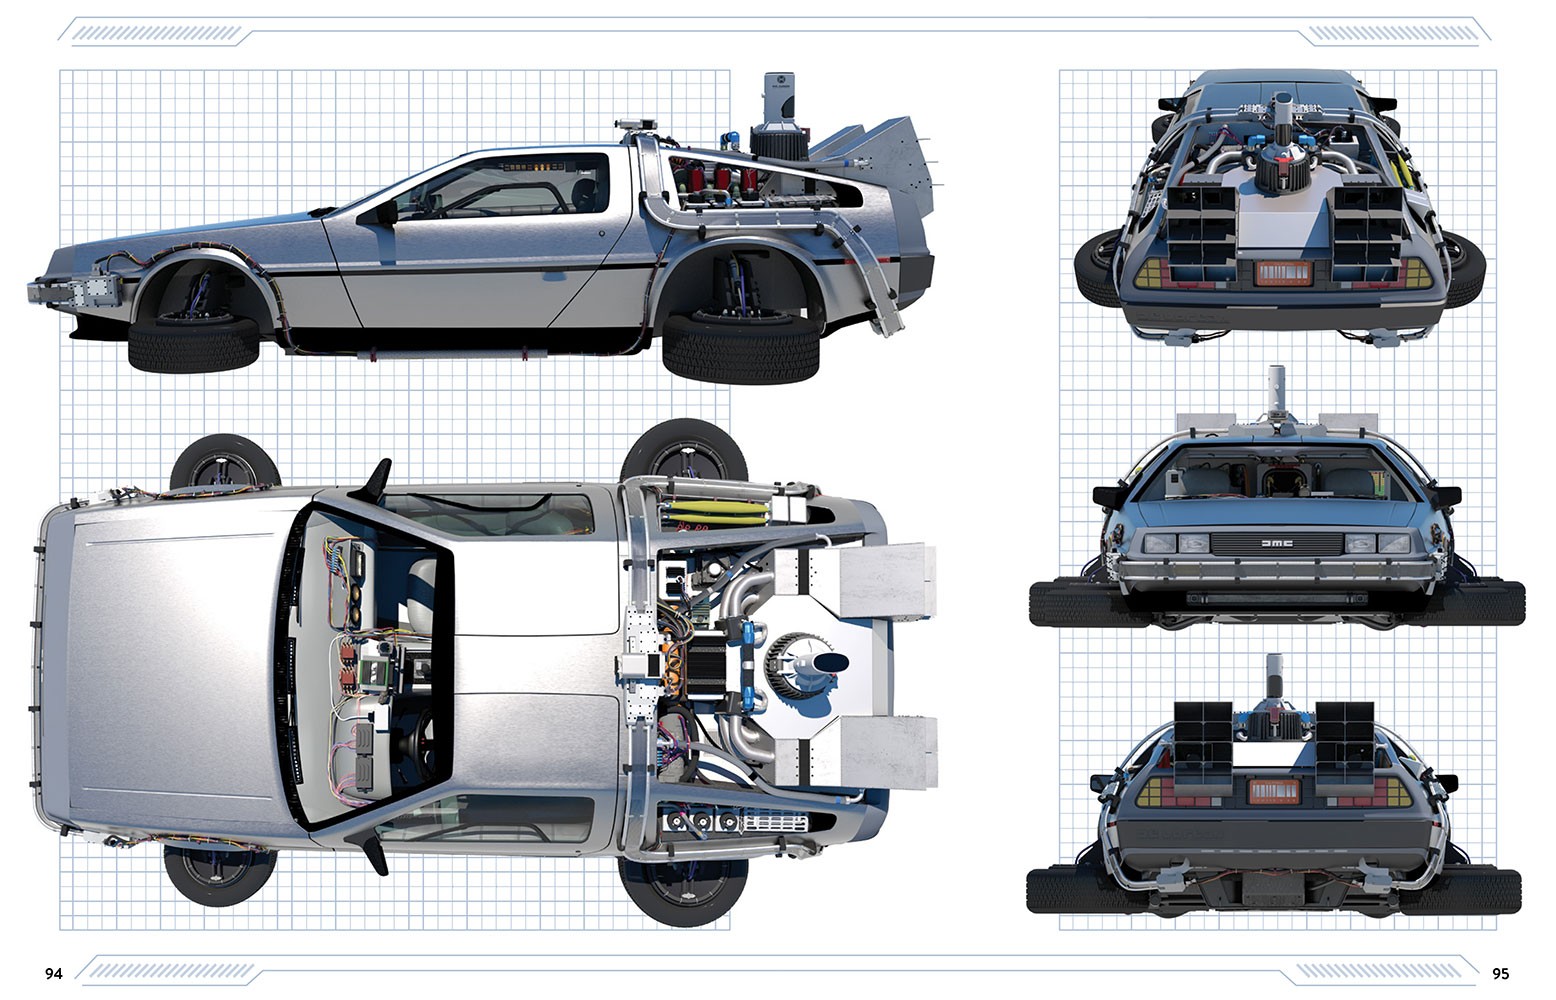 Back to the Future: DeLorean Time Machine